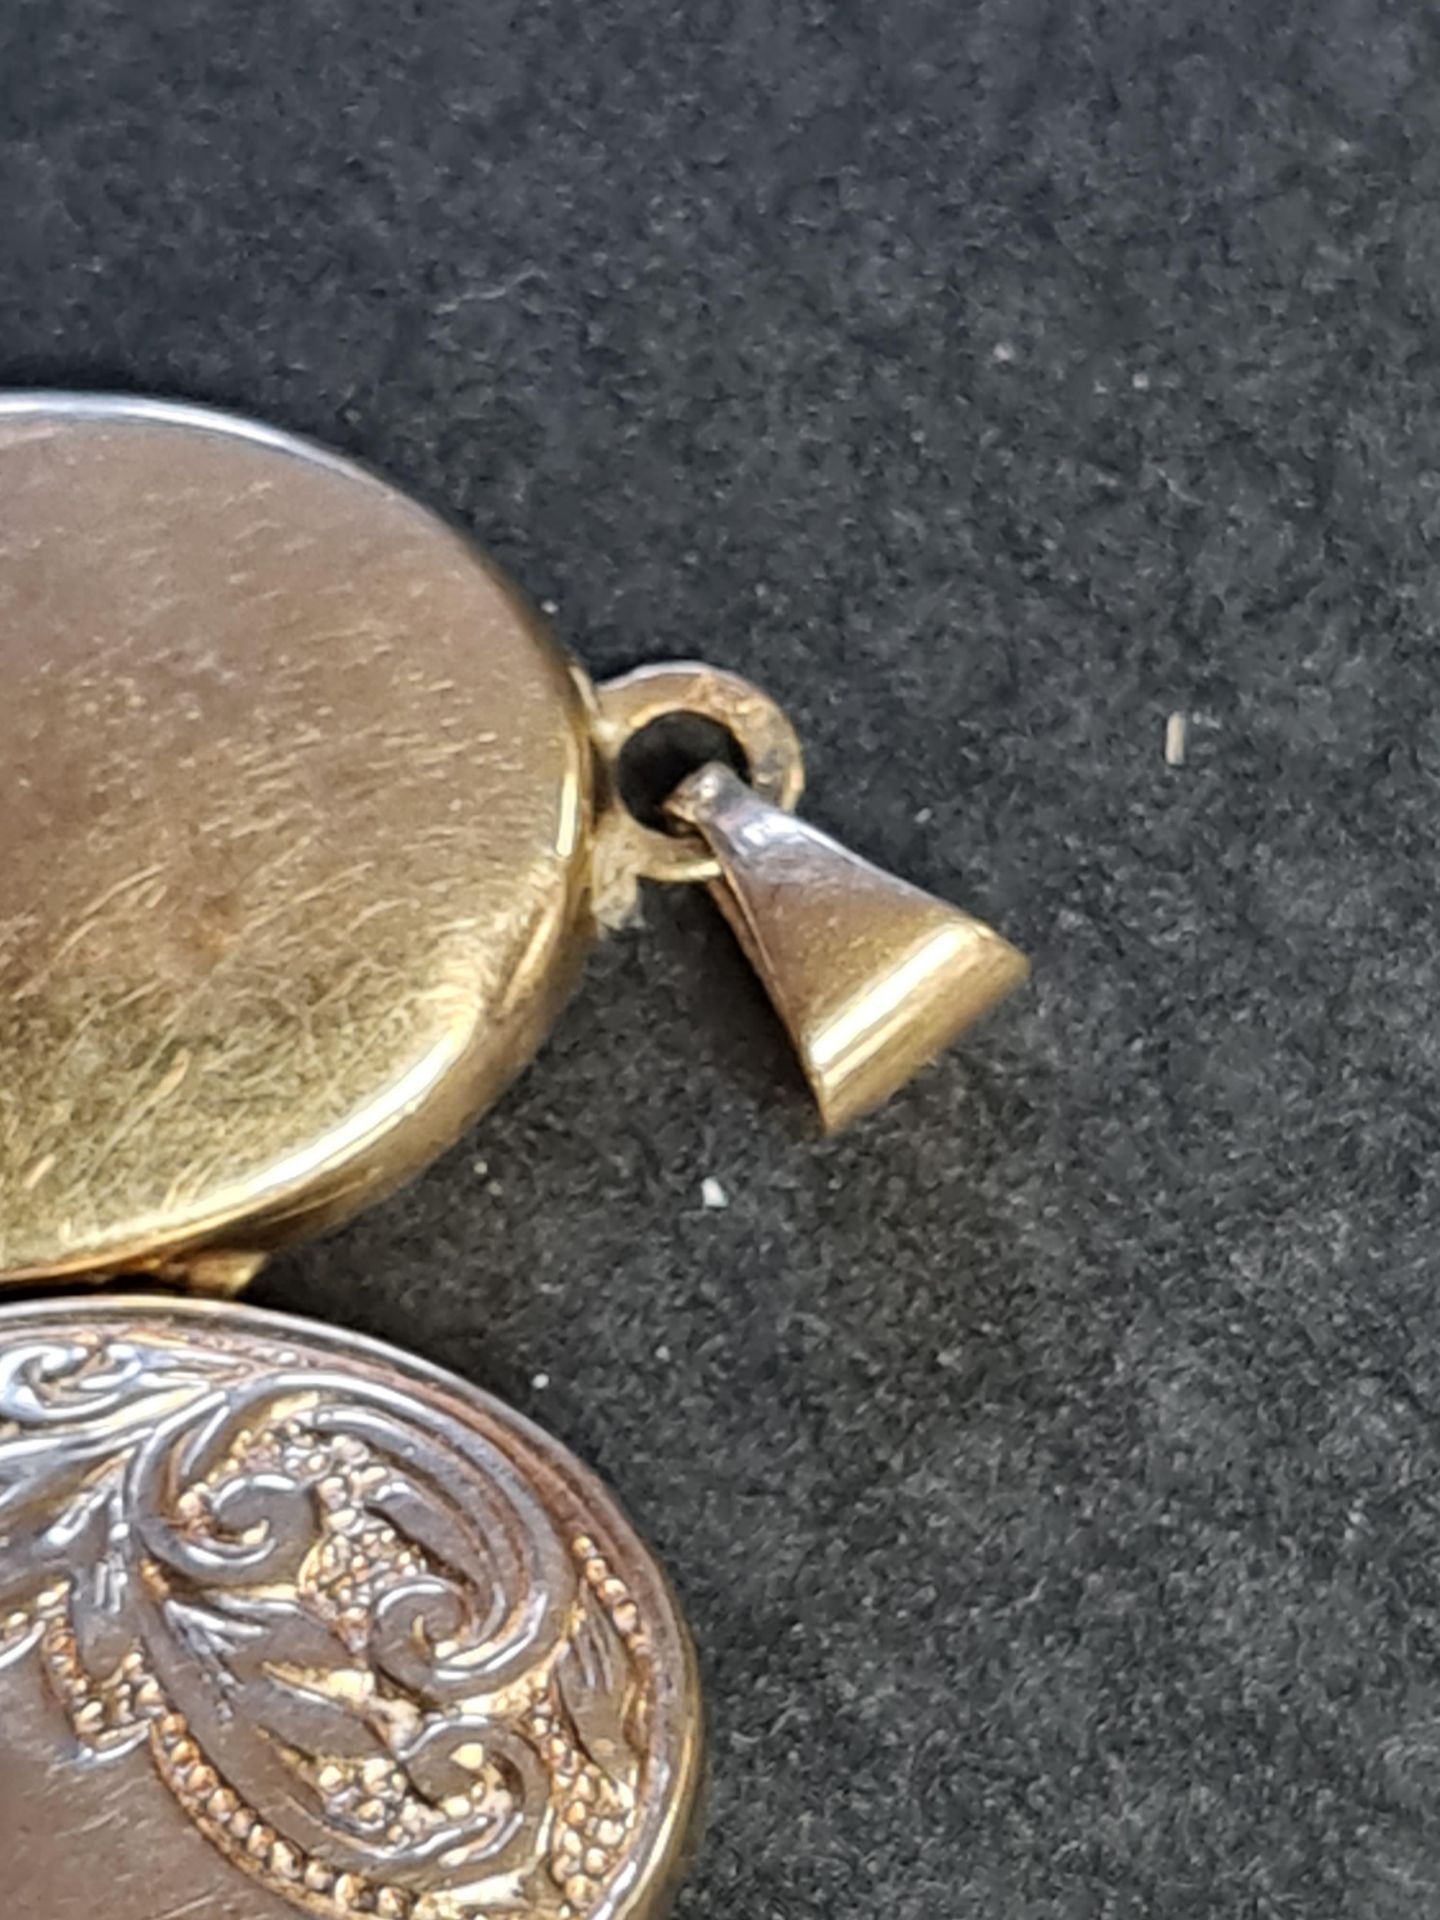 9ct gold locket - Image 3 of 3